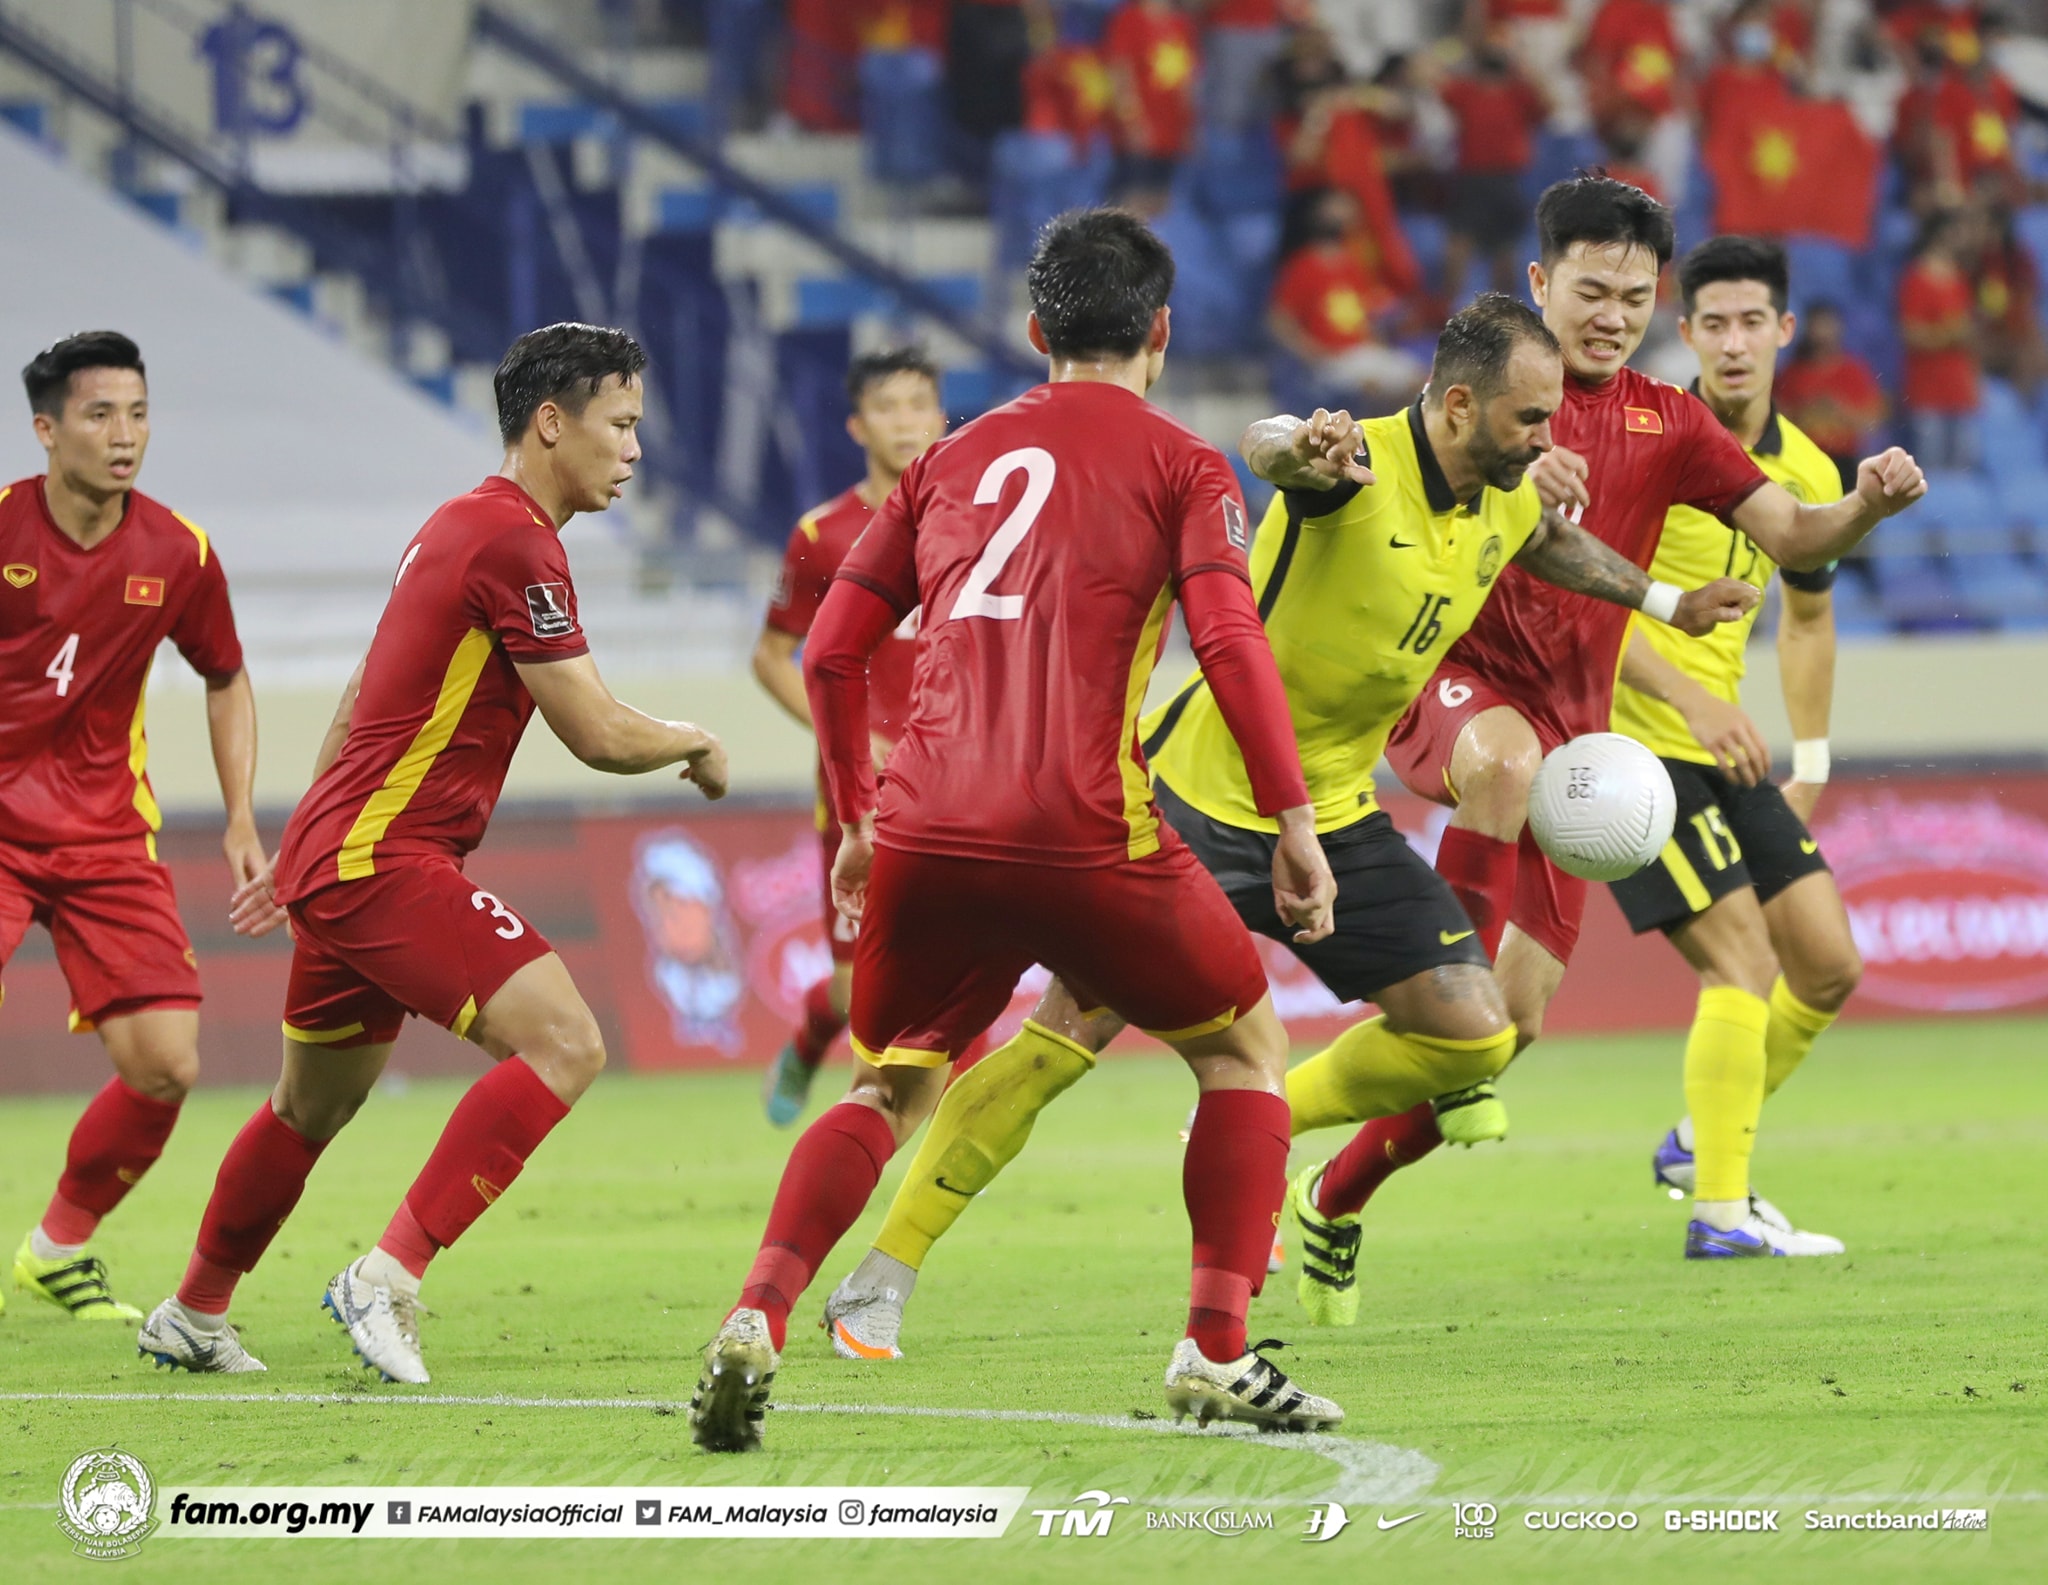 Lwn vietnam bola kemboja pasukan sepak bola kebangsaan pasukan kebangsaan sepak Pasukan ASEAN